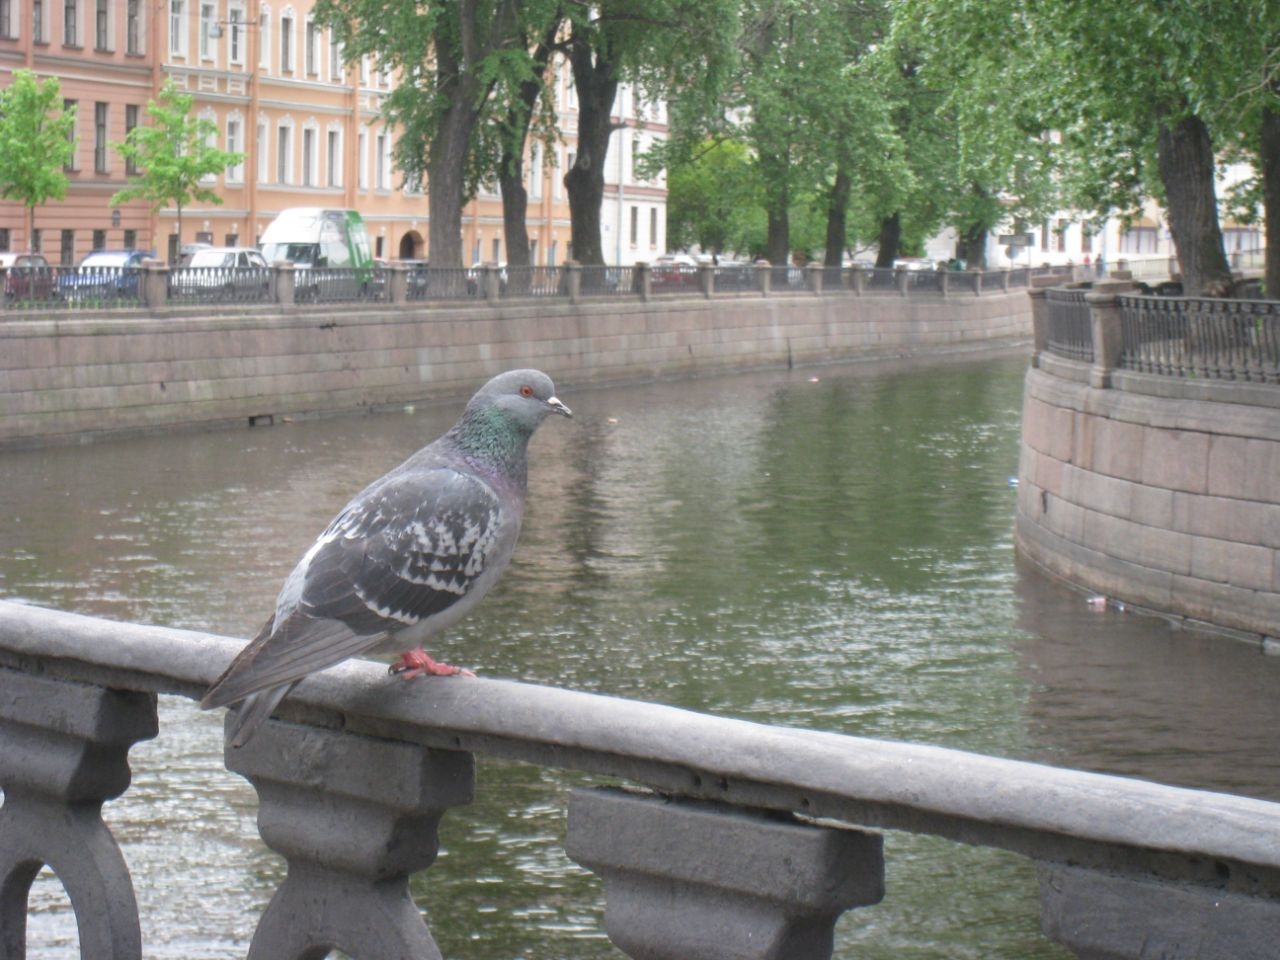 Коломна-петербургский уголок,известный с восемнадцатого века Санкт-Петербург, Россия